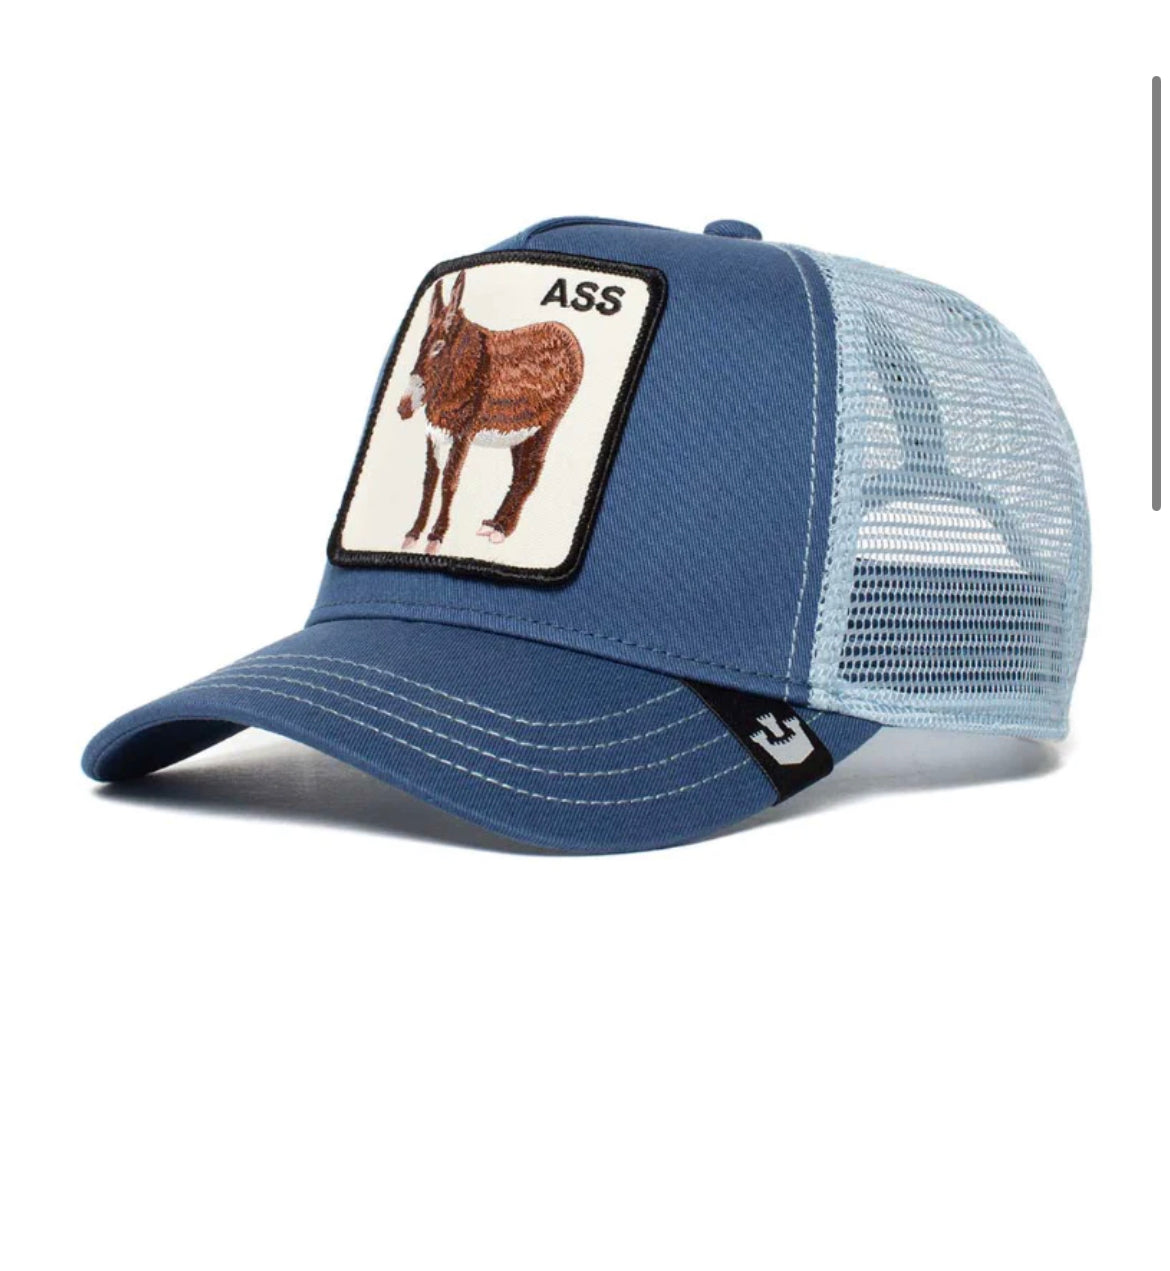 Goorin Bros Goorin Bros The Ass Trucker Hat (Blue)